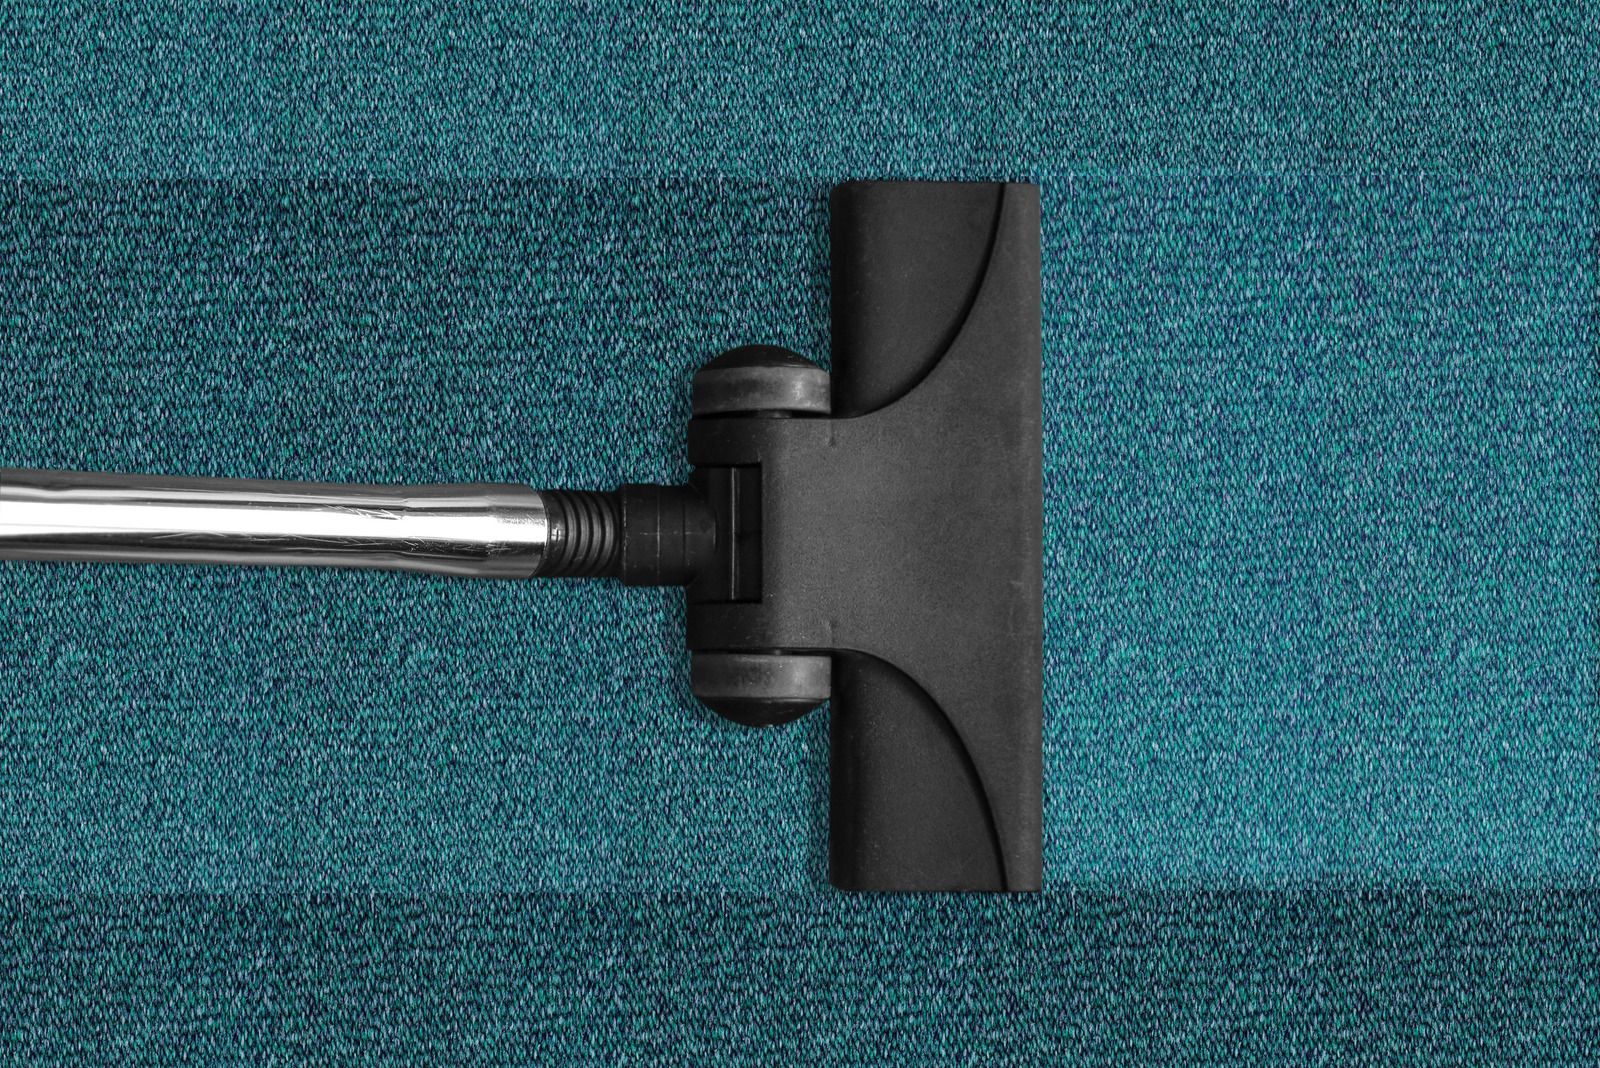 5 Tips for Long Lasting Carpet